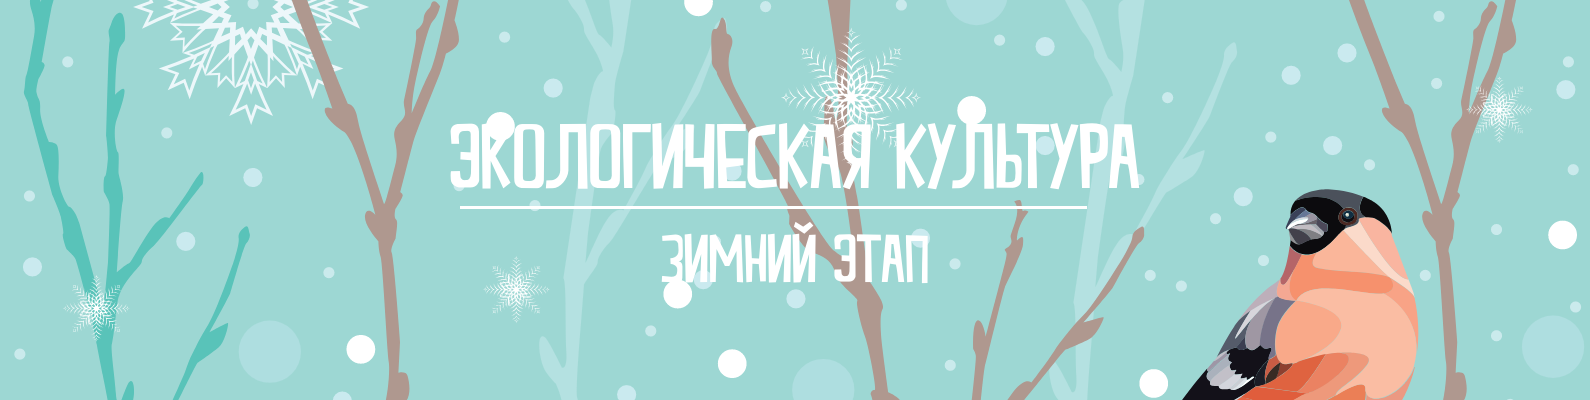 Зимний этап всероссийского конкурса «Экологическая культура»